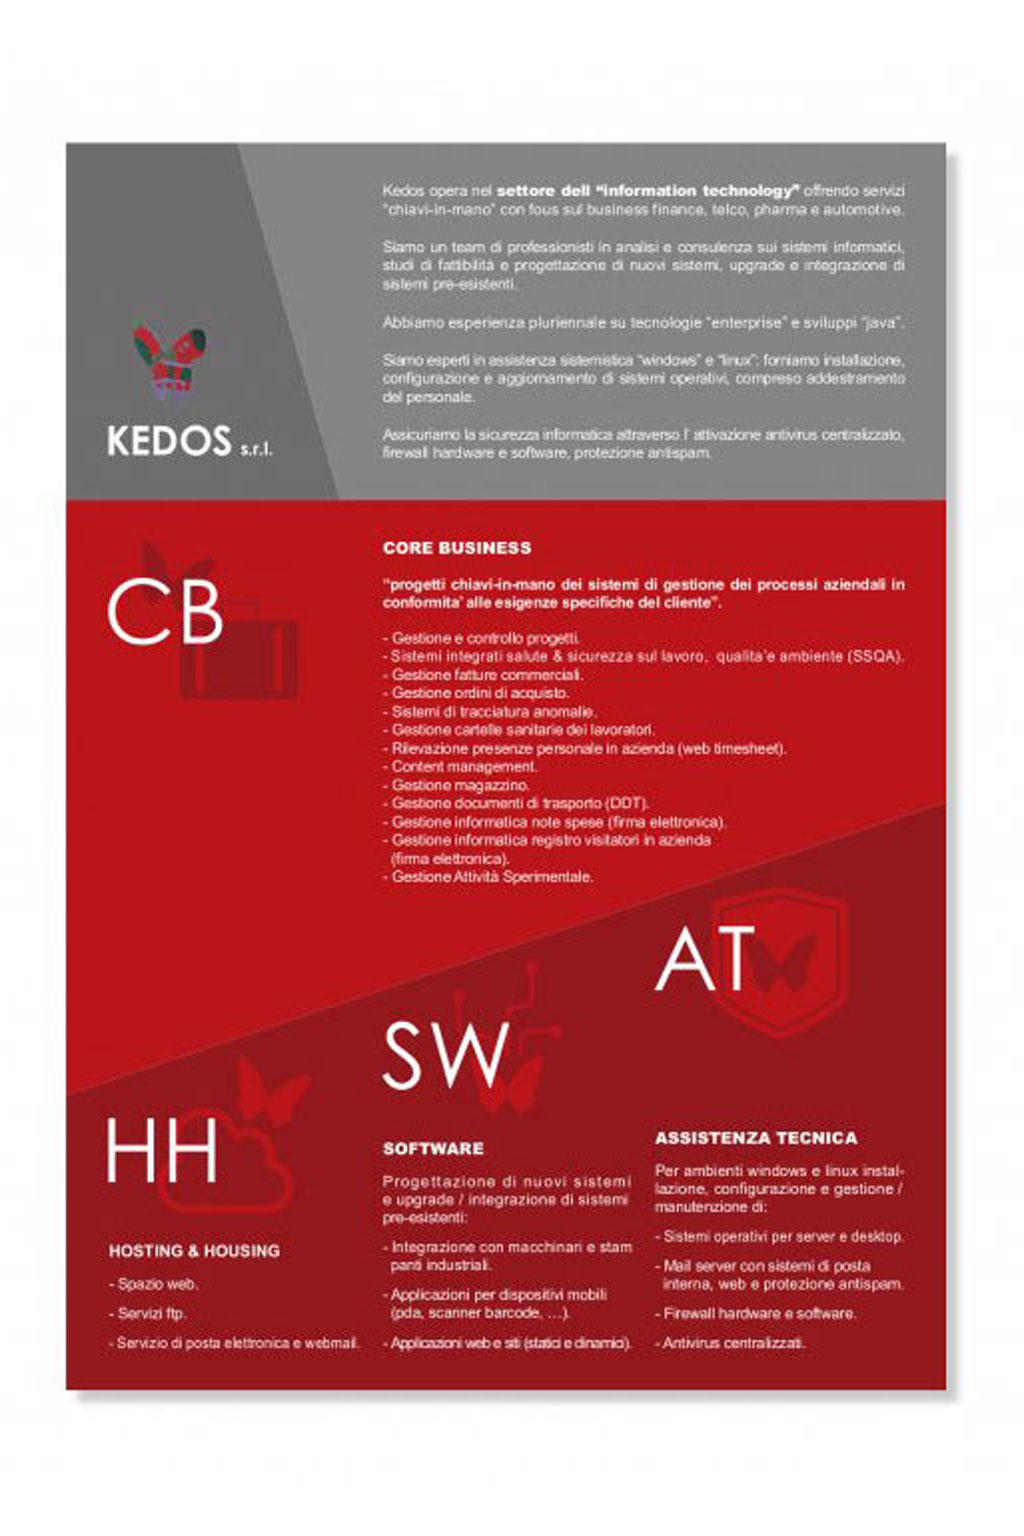 un-real-biffi-gentili-zampolini_kedos-s.r.l._brochure-istituzionale-kedos-s.r.l.-2